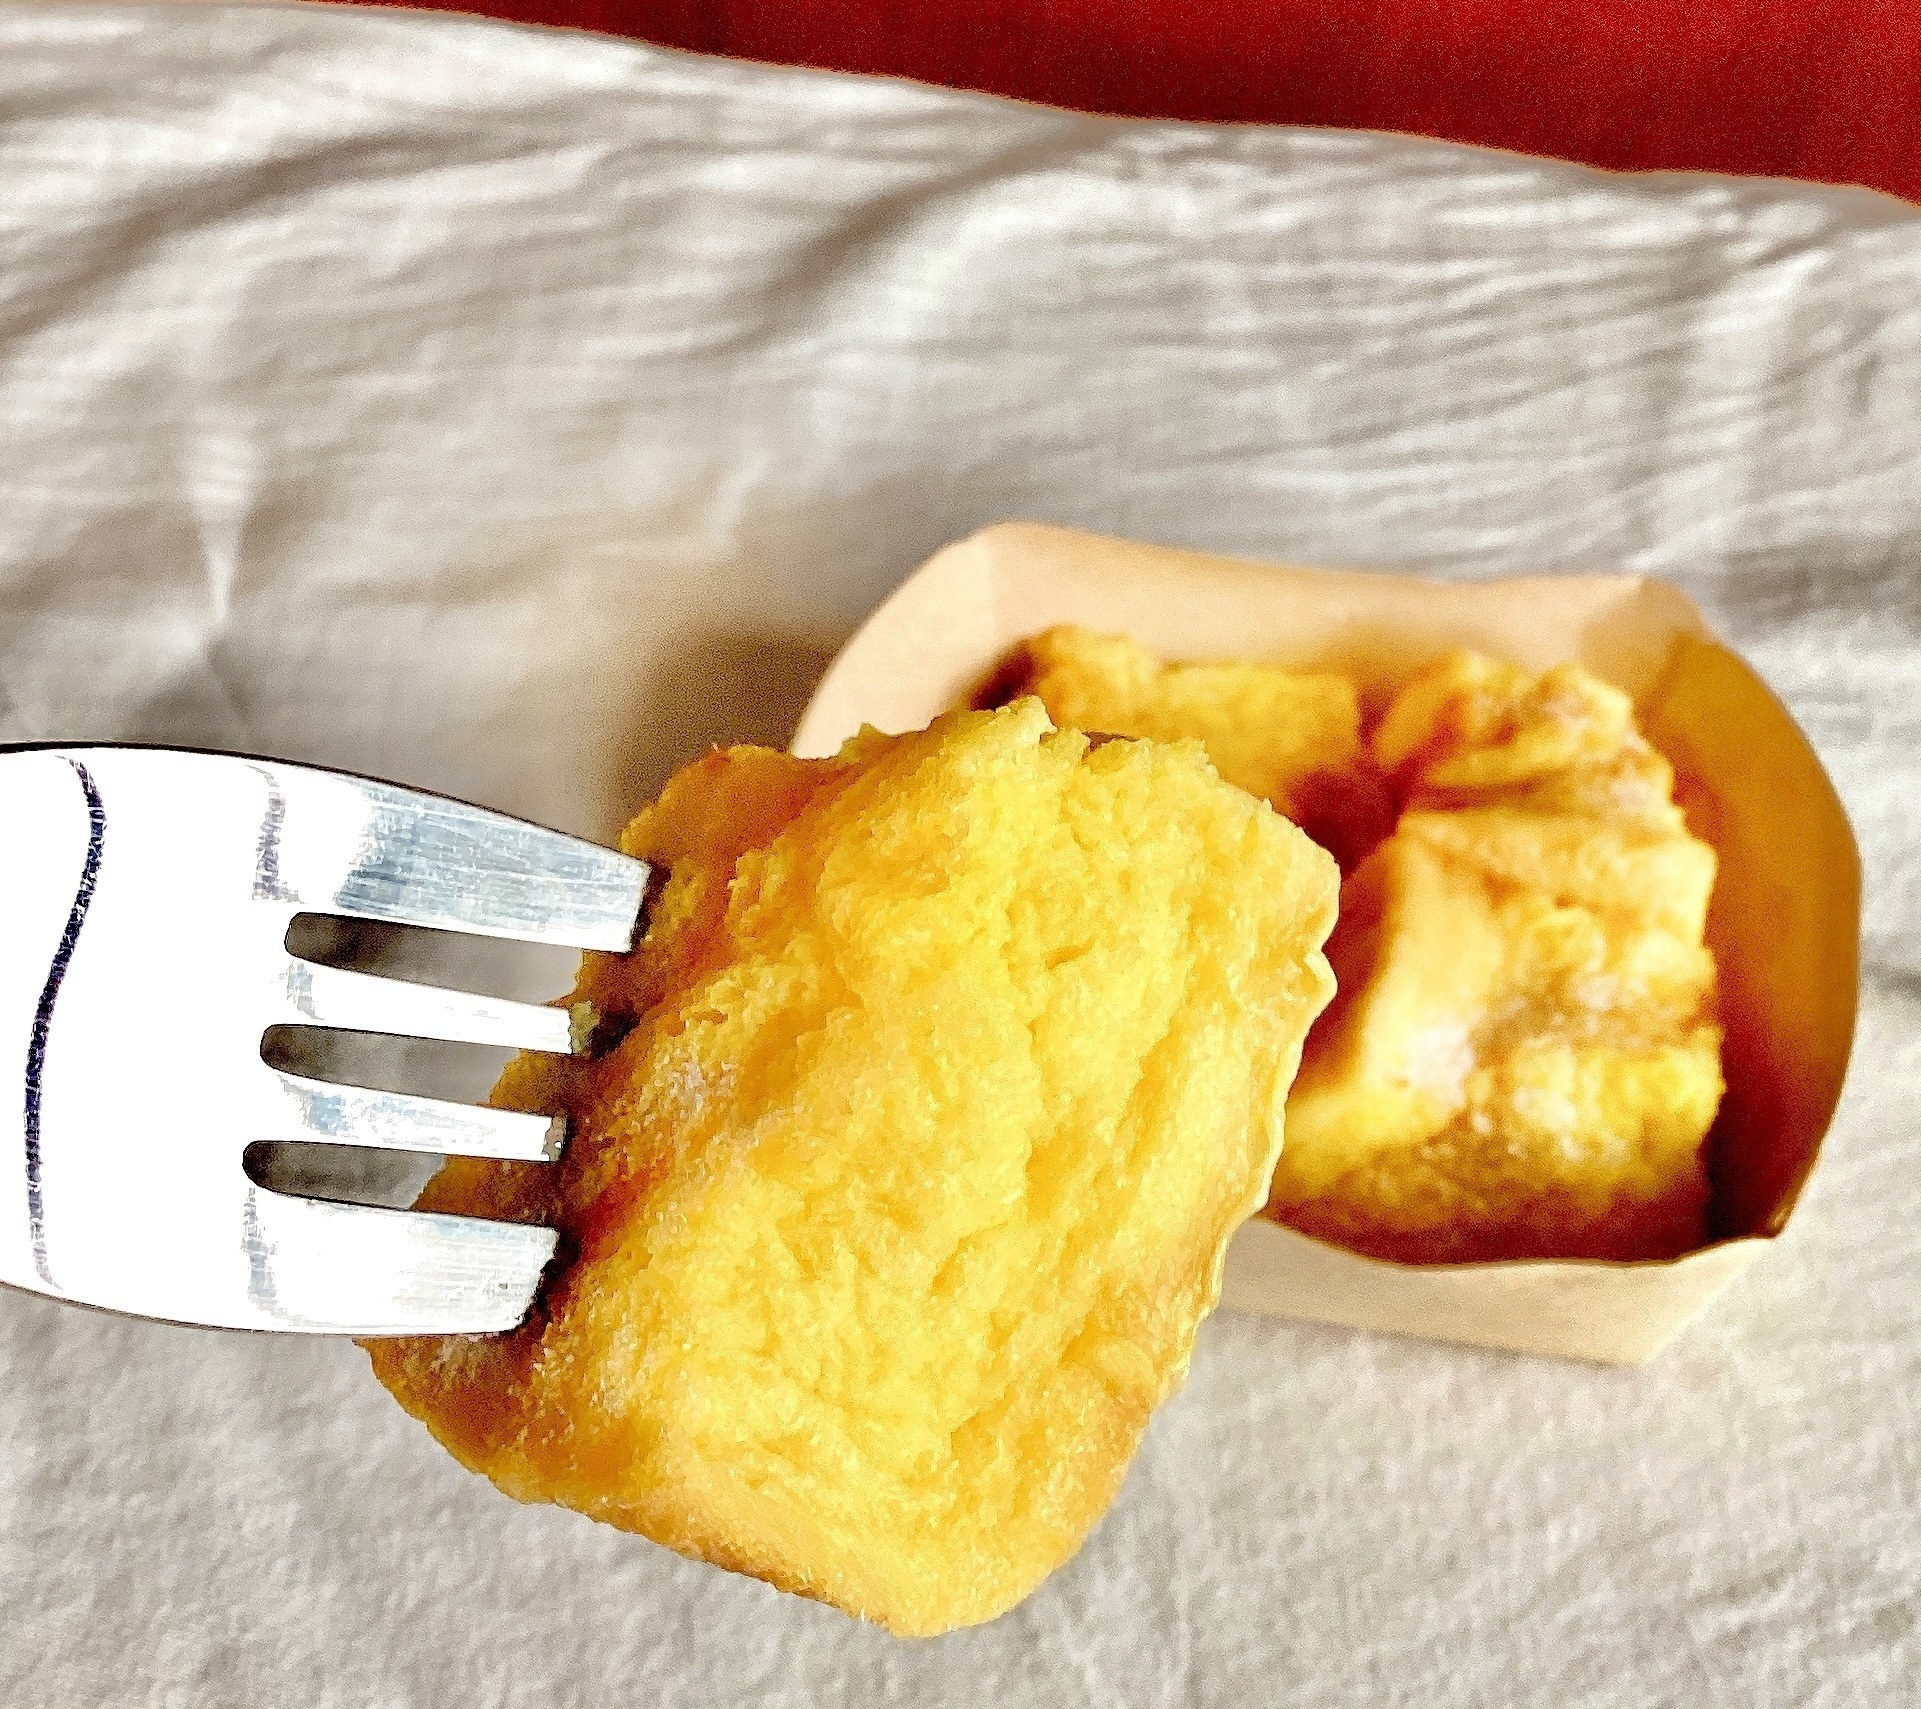 セブン-イレブンのオススメのパン「ひとくちフレンチトースト」